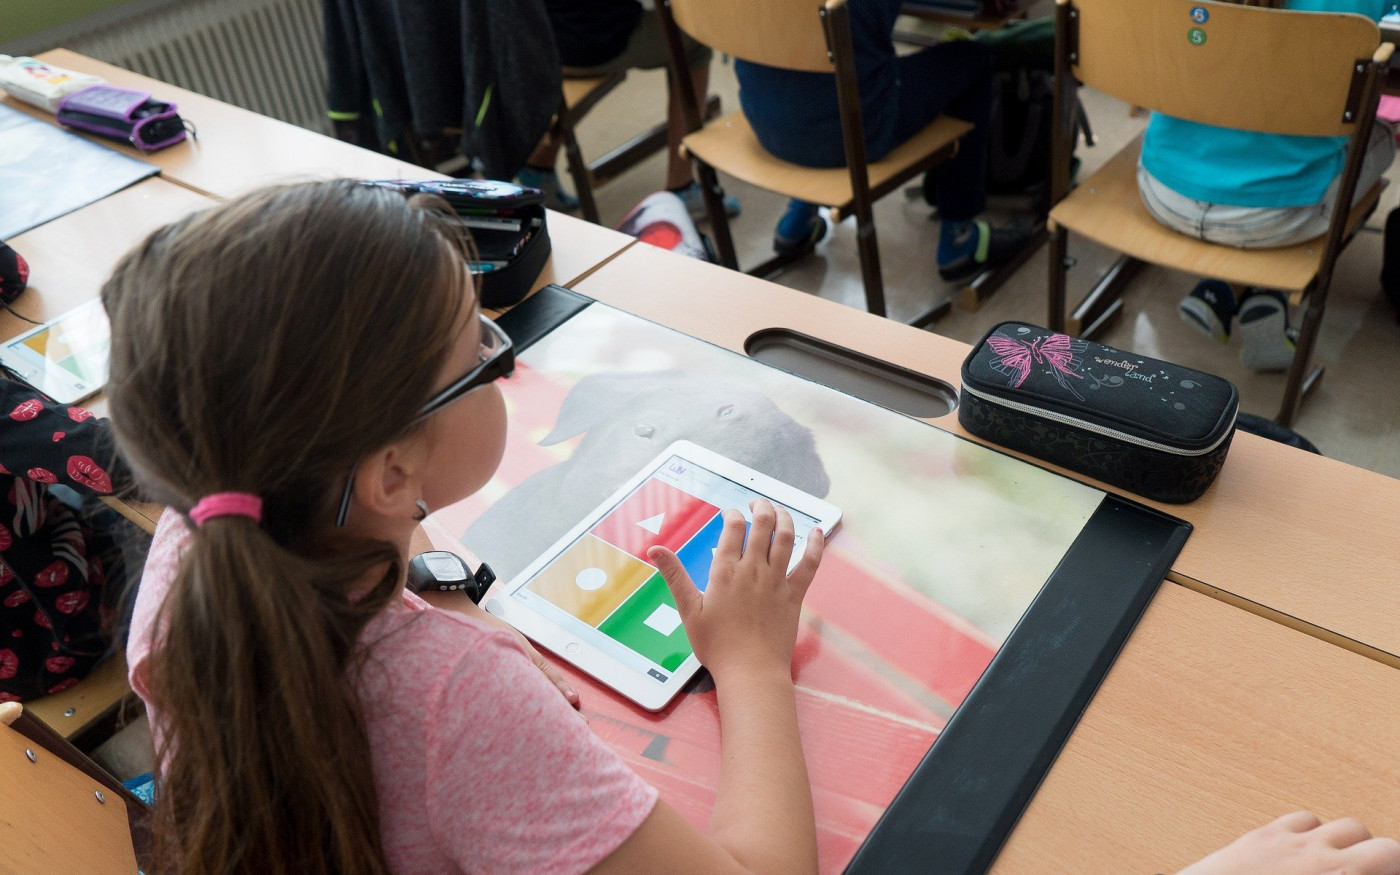 Landkreis Gifhorn erhält rund 860.000 Euro für mobile Endgeräte an Schulen